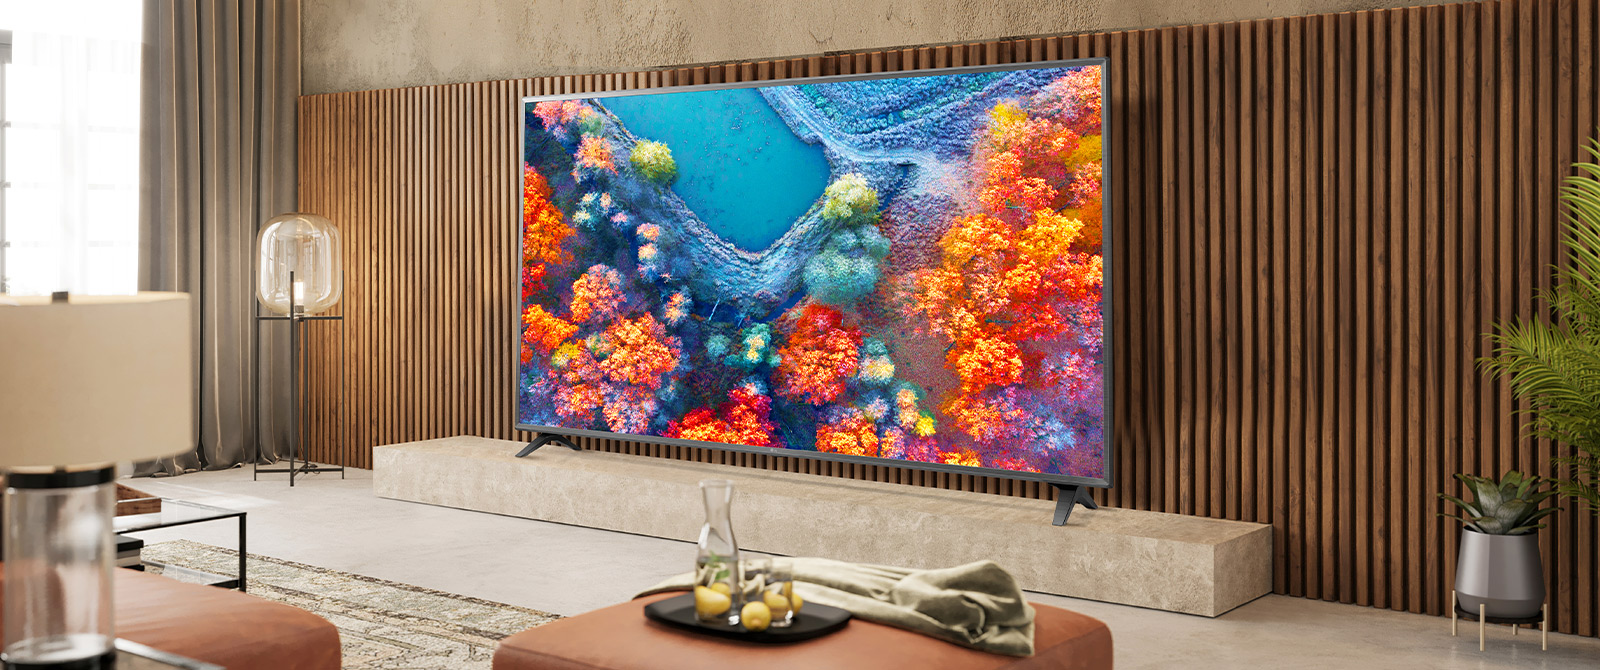 У вітальні встановлений телевізор із тонкою рамкою, яскравий екран якого добре поєднується з інтер'єром.